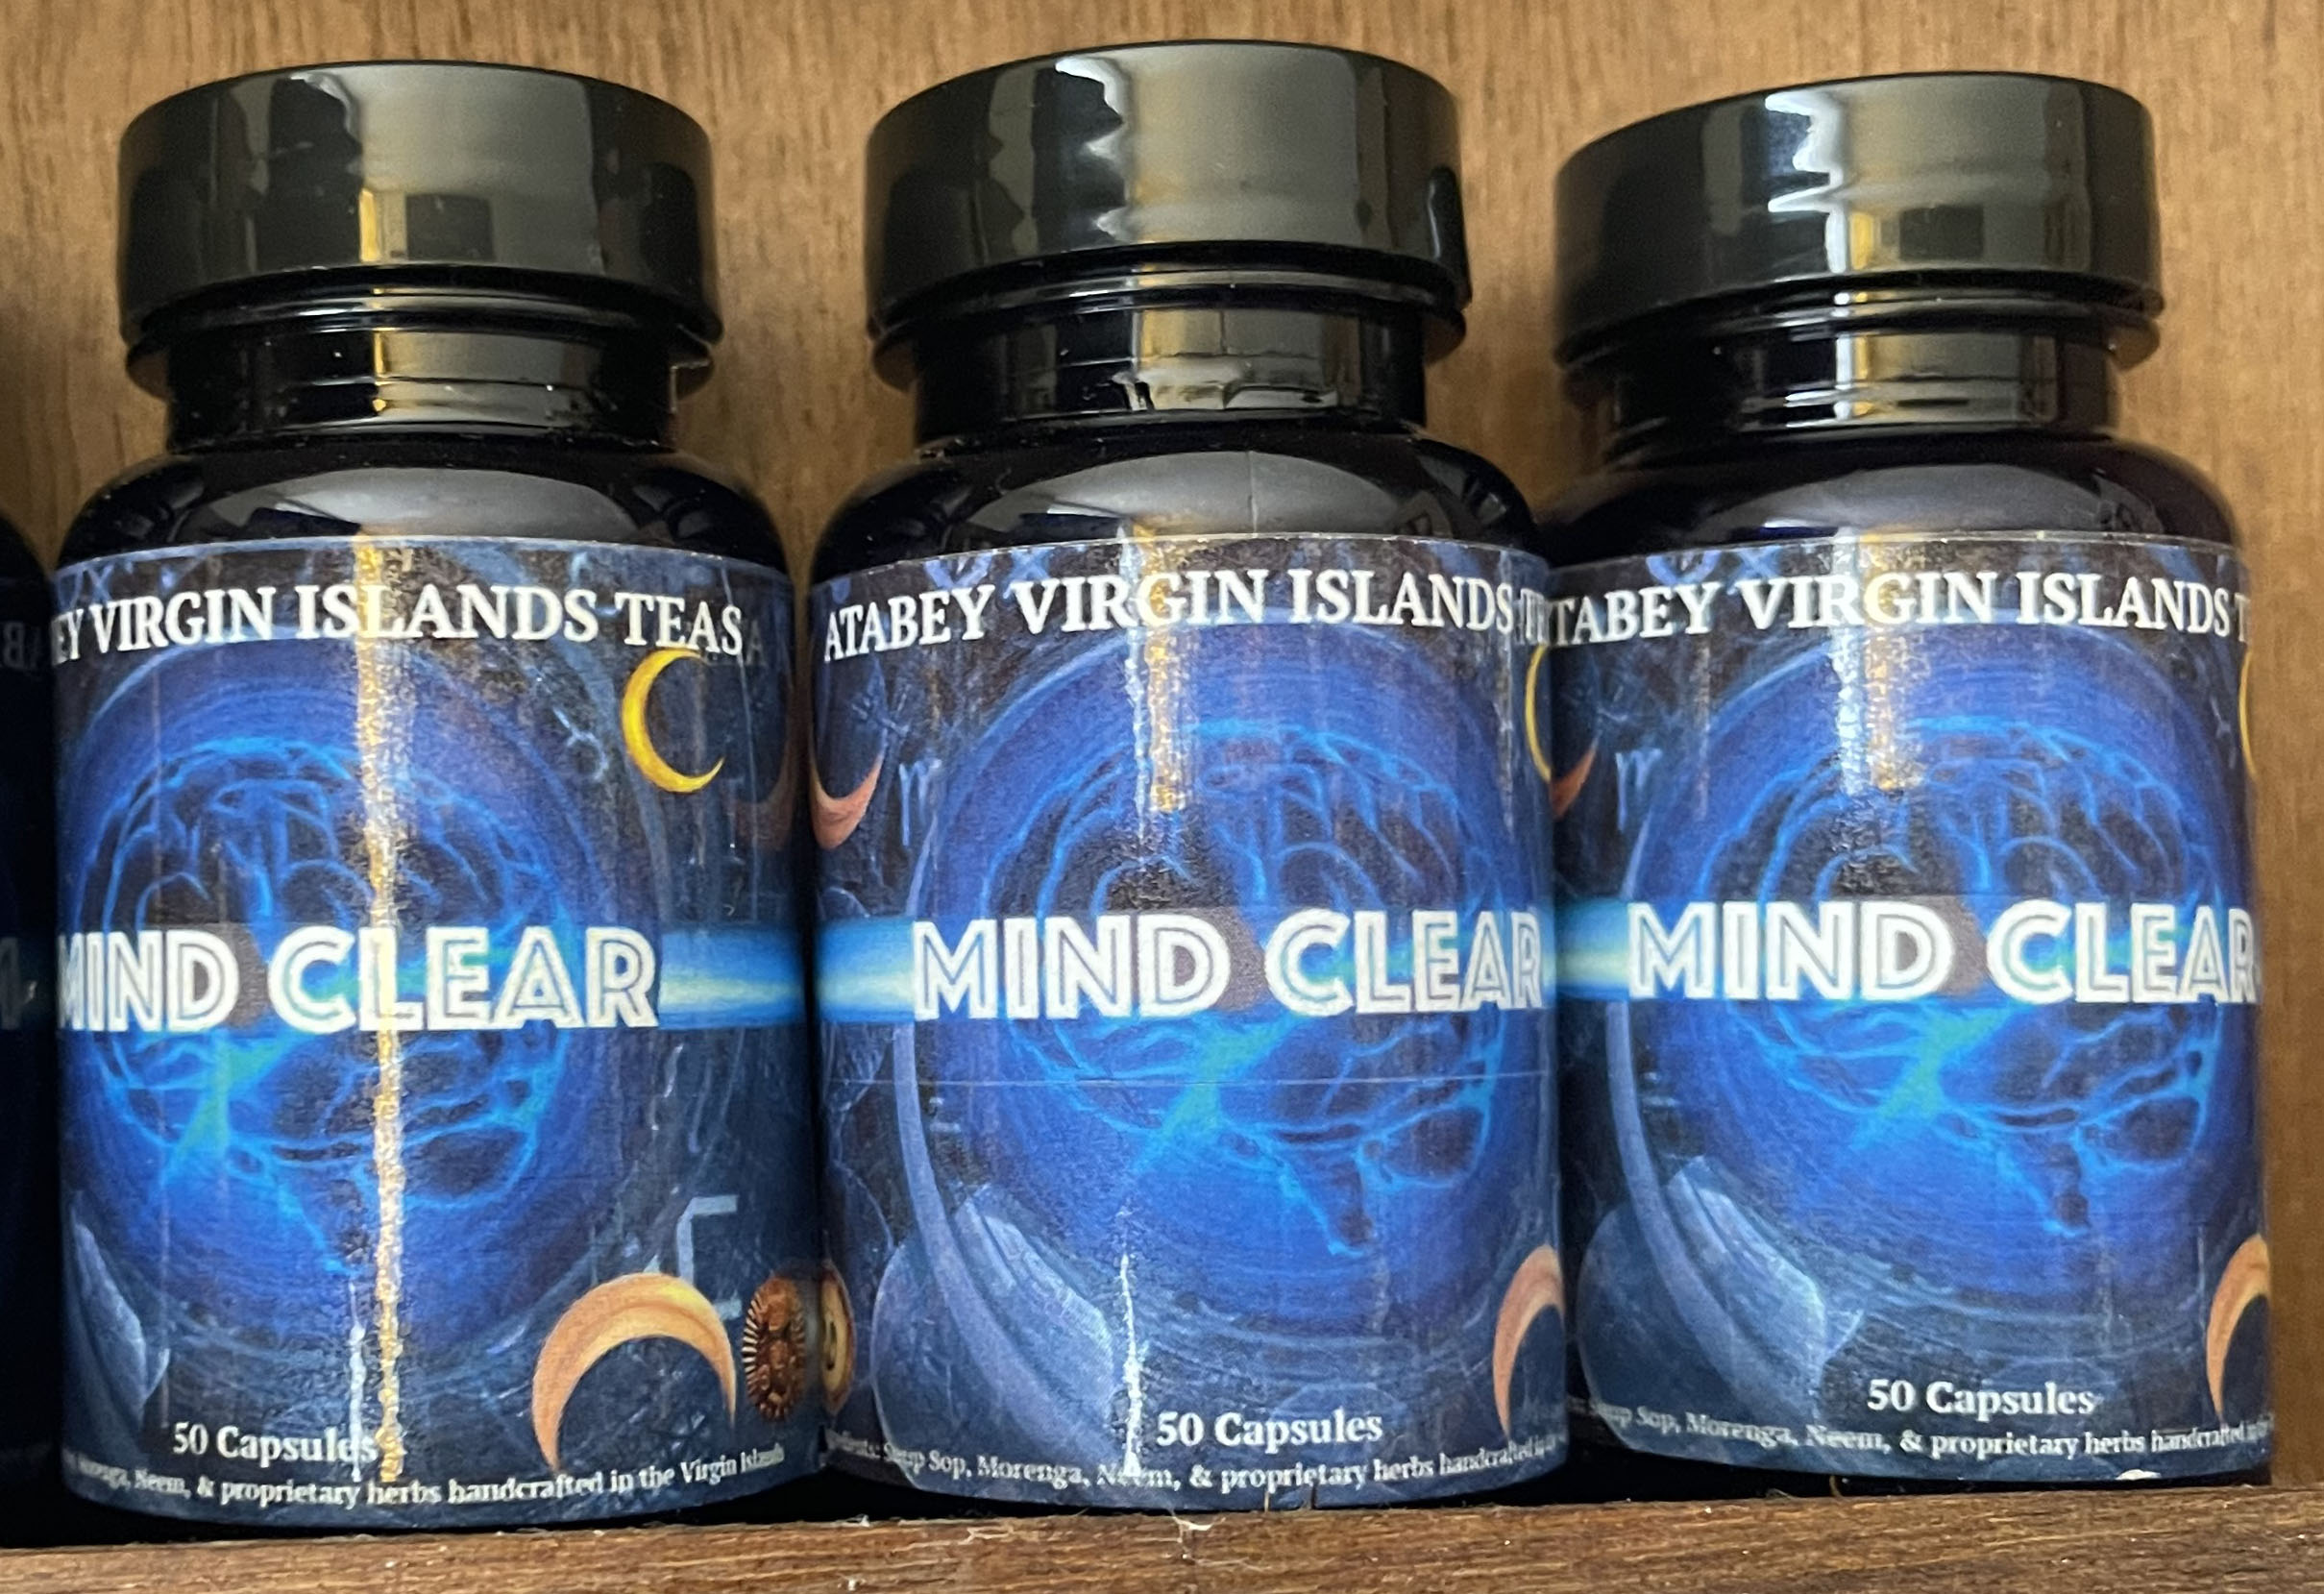 Mind Clear bottles